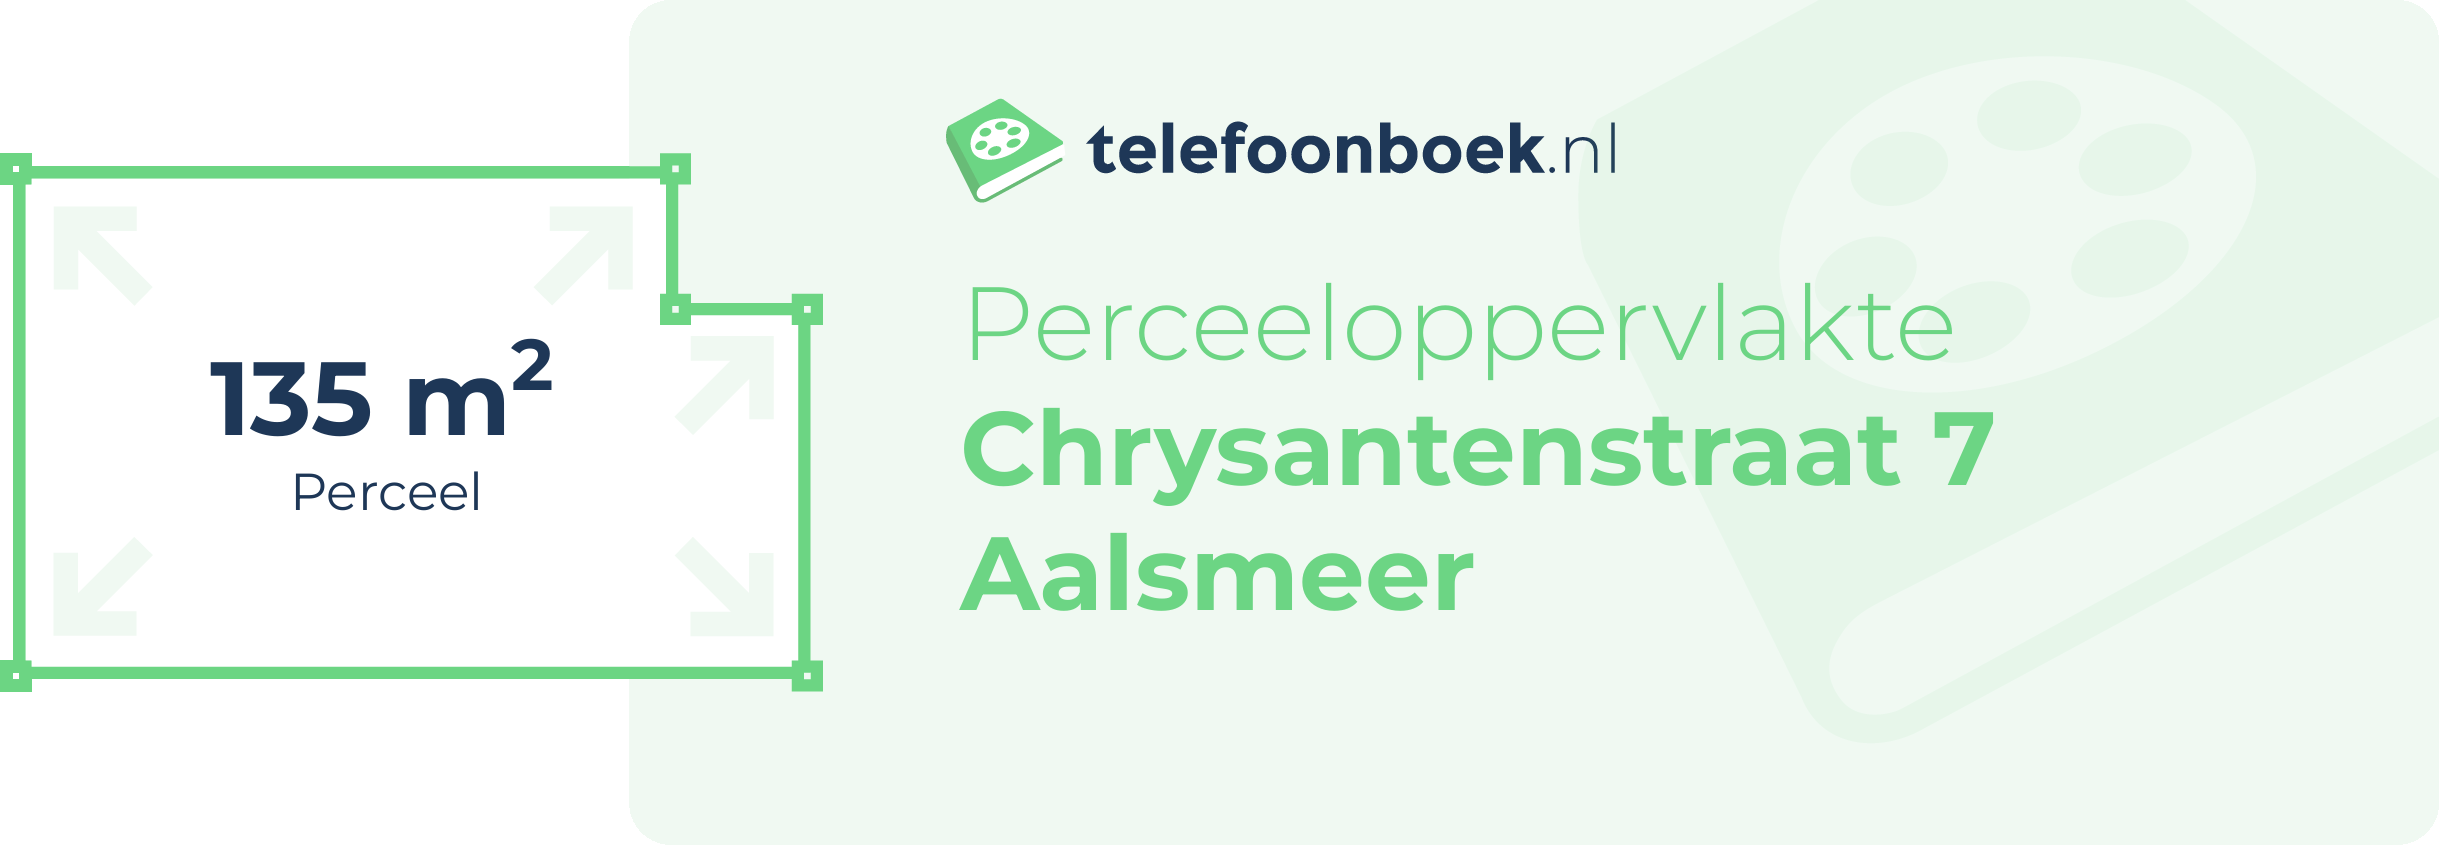 Perceeloppervlakte Chrysantenstraat 7 Aalsmeer